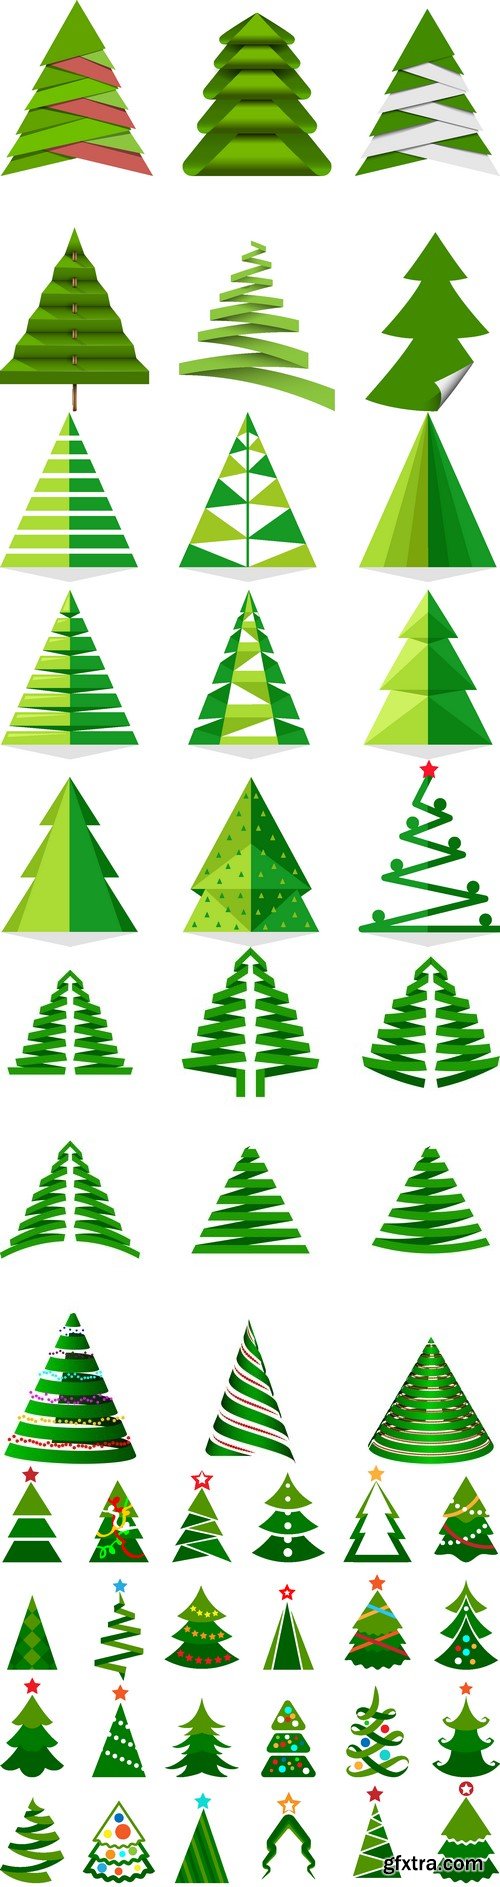 Vectors - Creative Christmas Trees Set 8